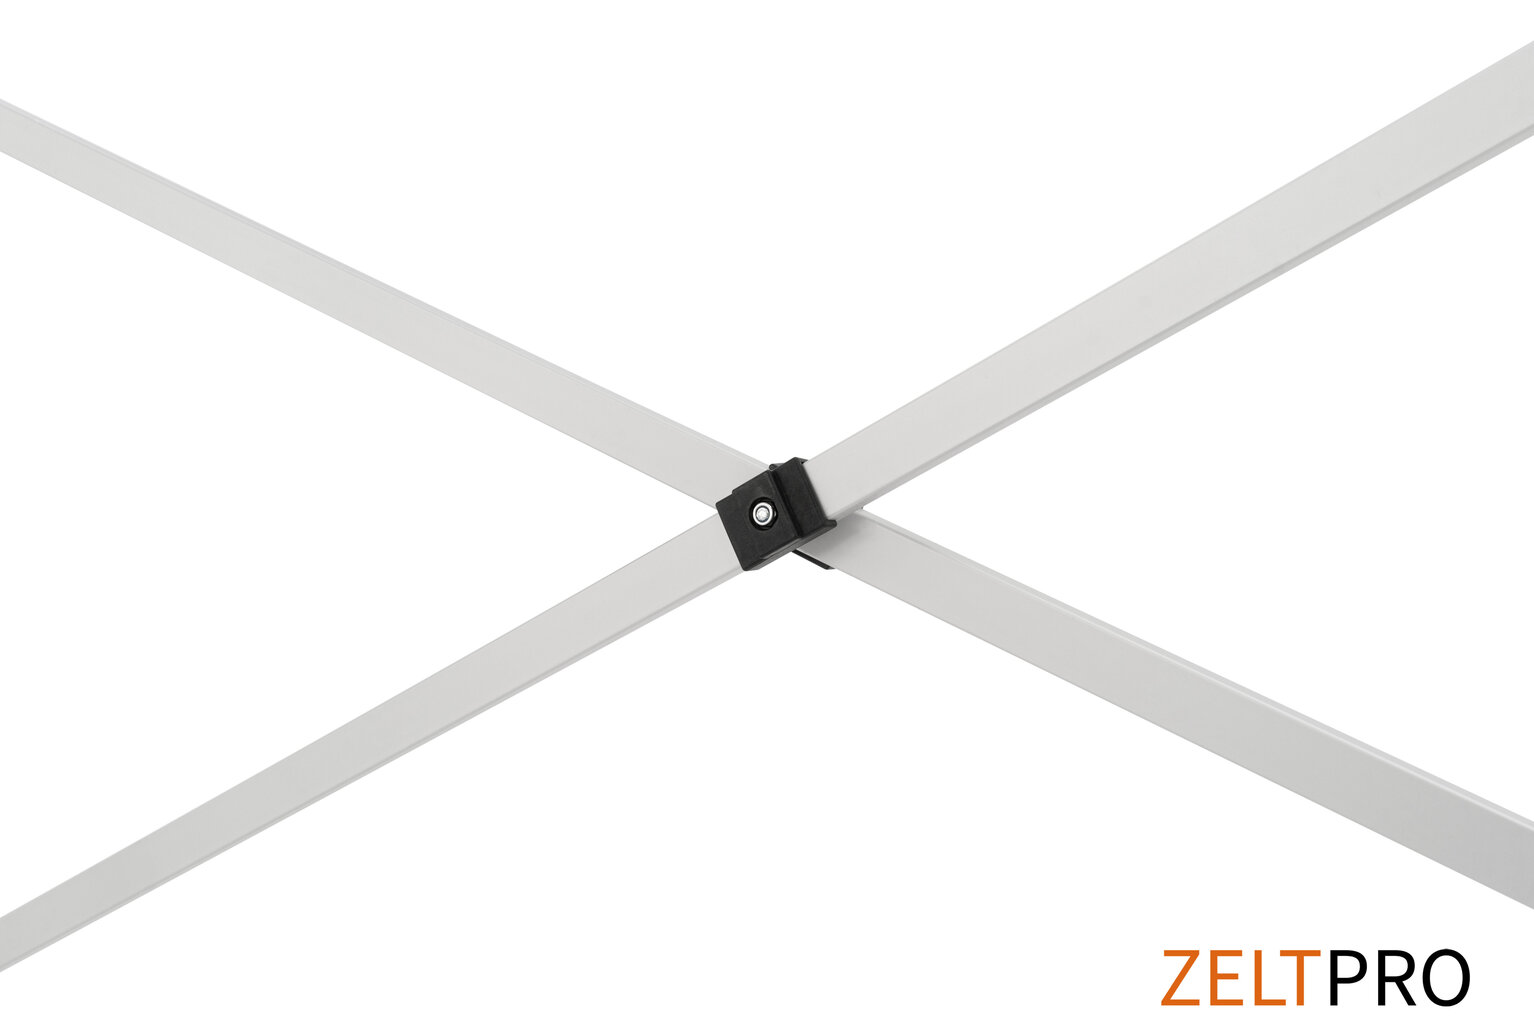 Prekybinė palapinė Zeltpro TITAN Juoda, 3x3 kaina ir informacija | Palapinės | pigu.lt